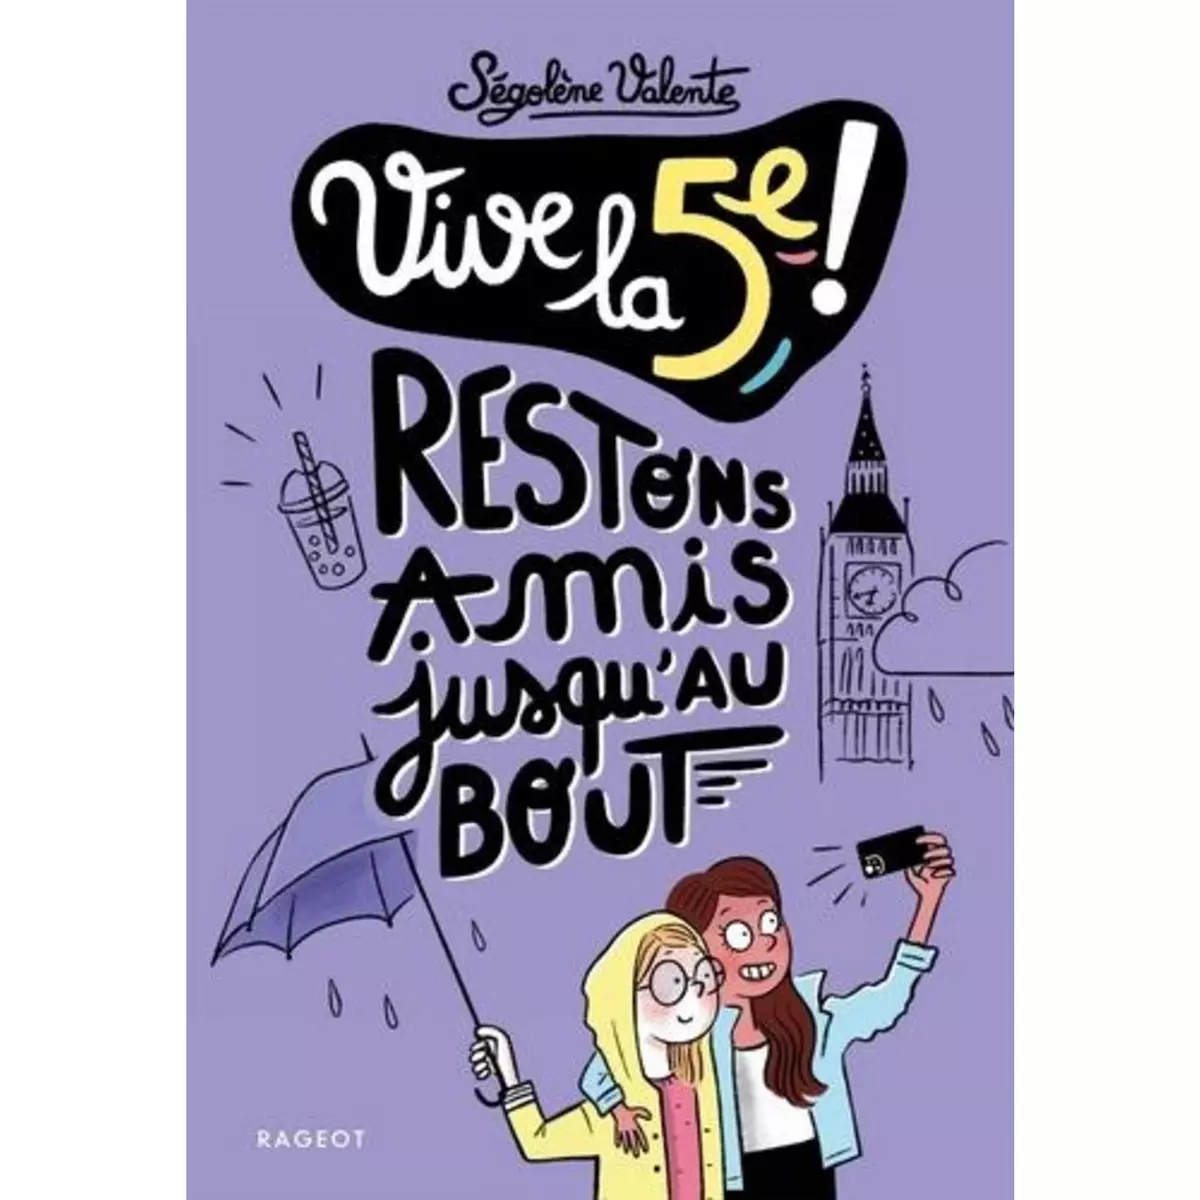  VIVE LA 5E ! : RESTONS AMIS JUSQU'AU BOUT, Valente Ségolène